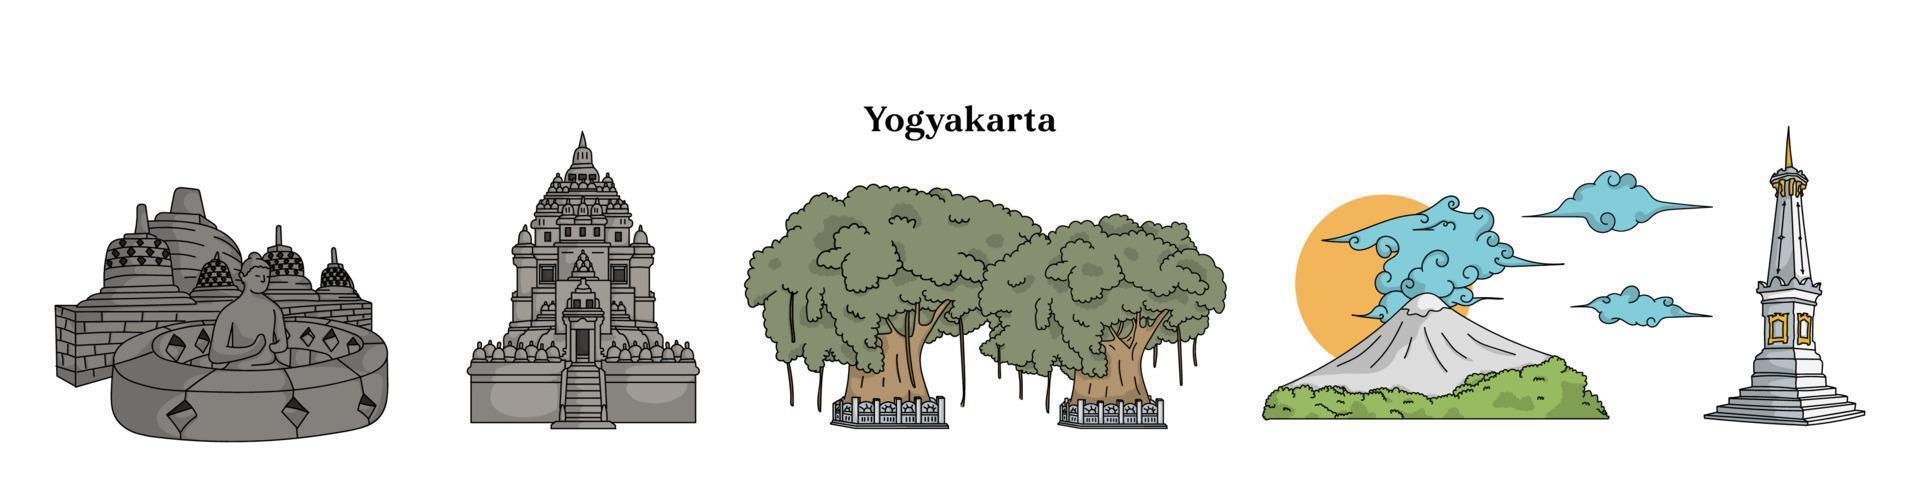 isolerade yogyakarta landskapsmall. borobudur tempel. prambanan tempel. tugu jogja. vektor